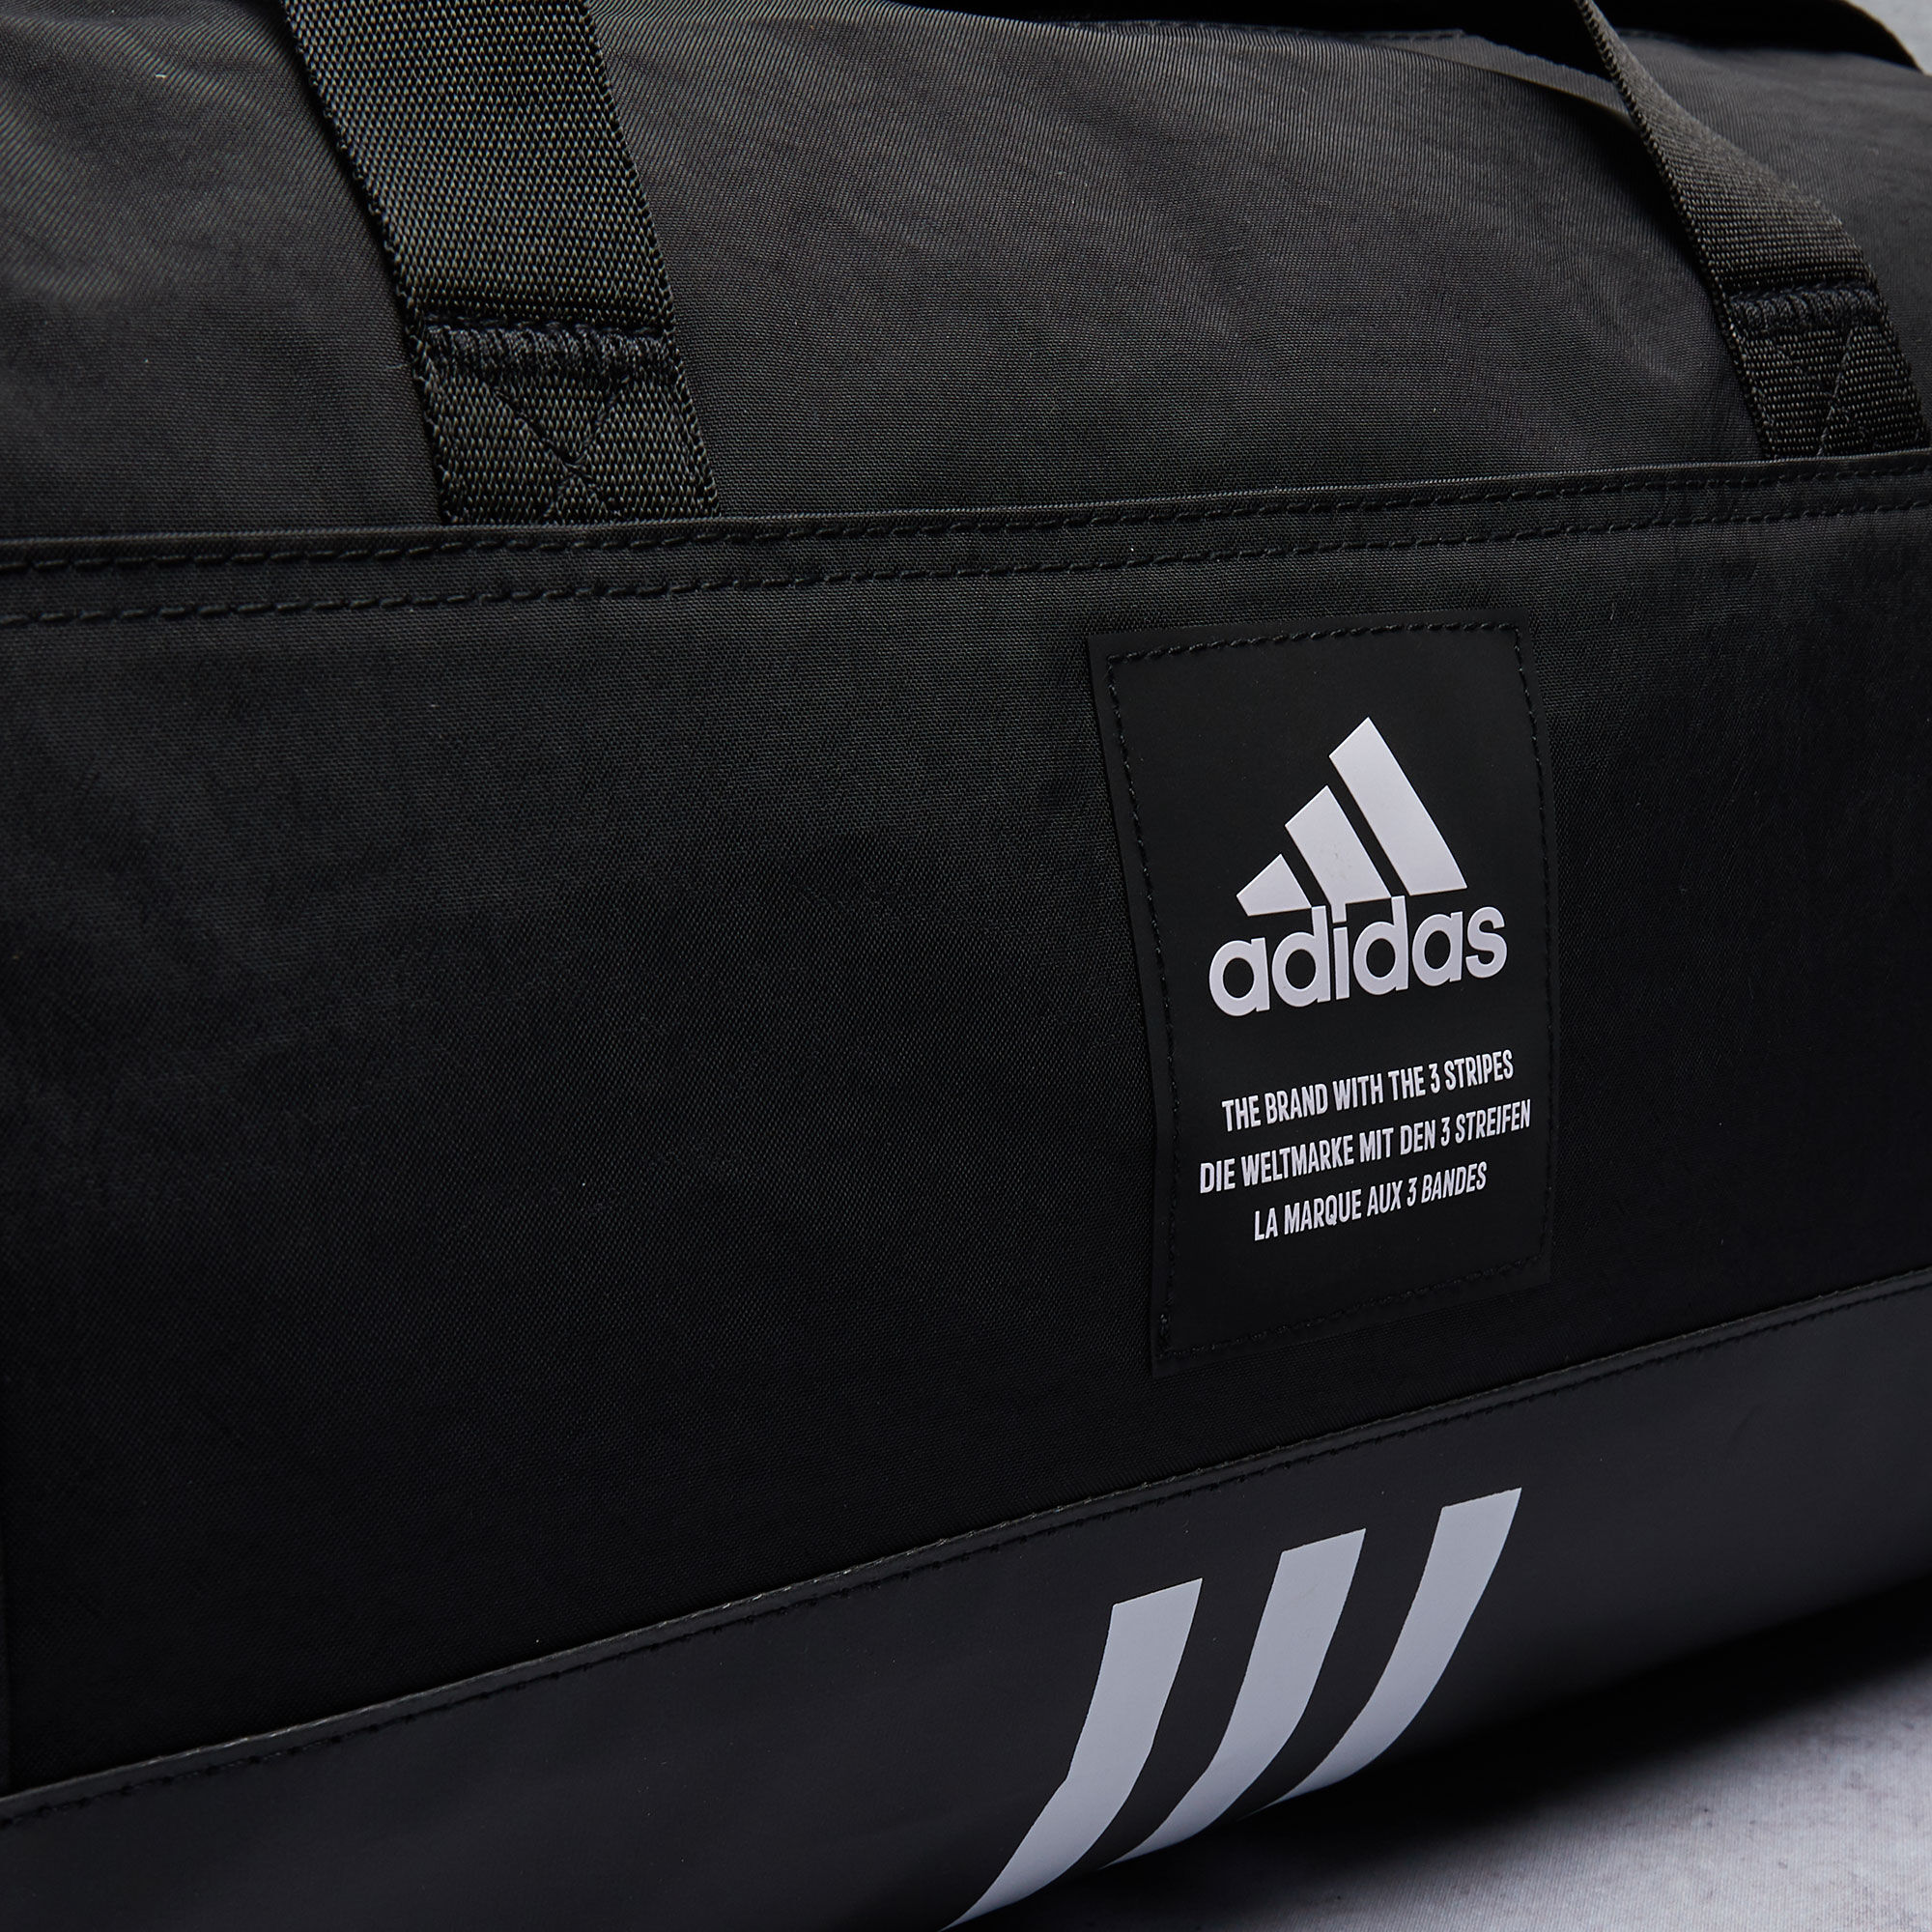 Adidas Originals Defense 2 Medium Duffle Bag gym travel carry on Black and  Gold | eBay